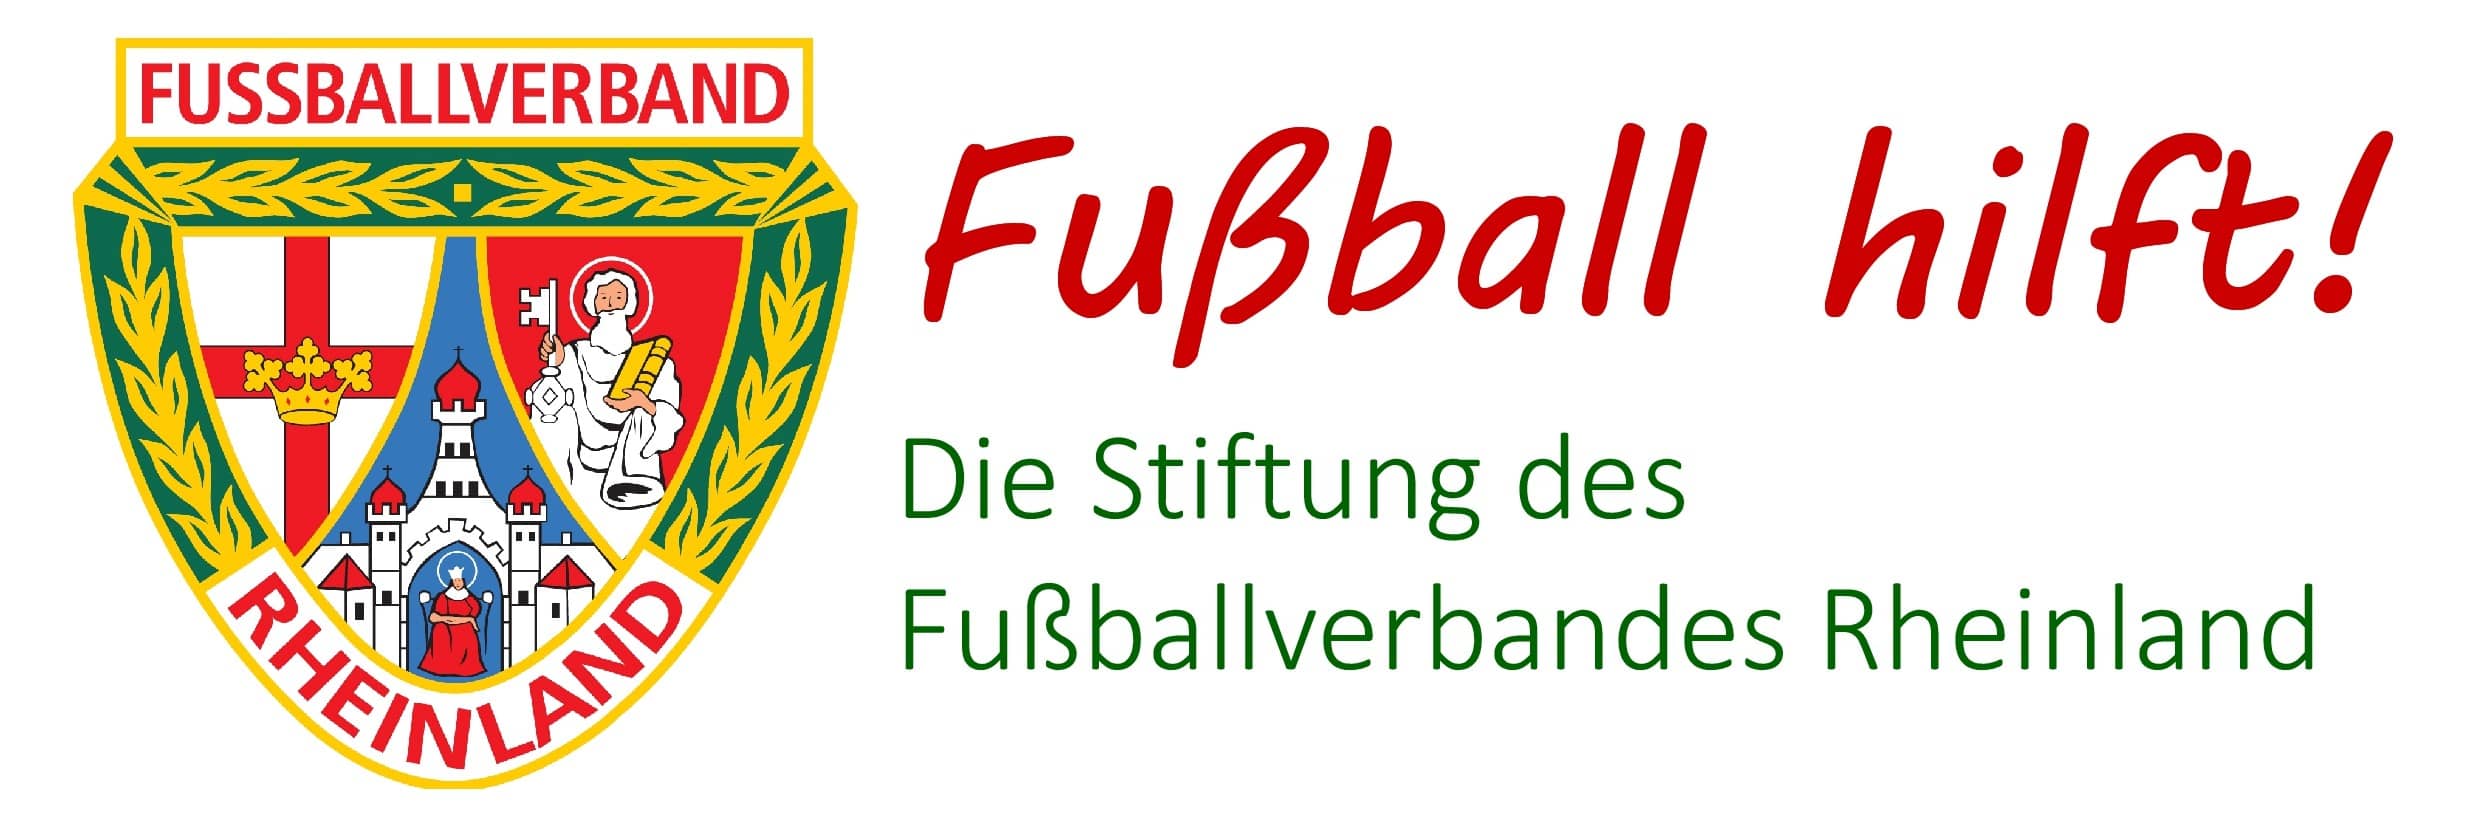 Logo Fußball hilft! - Die Stiftung des Fußballverbandes Rheinland